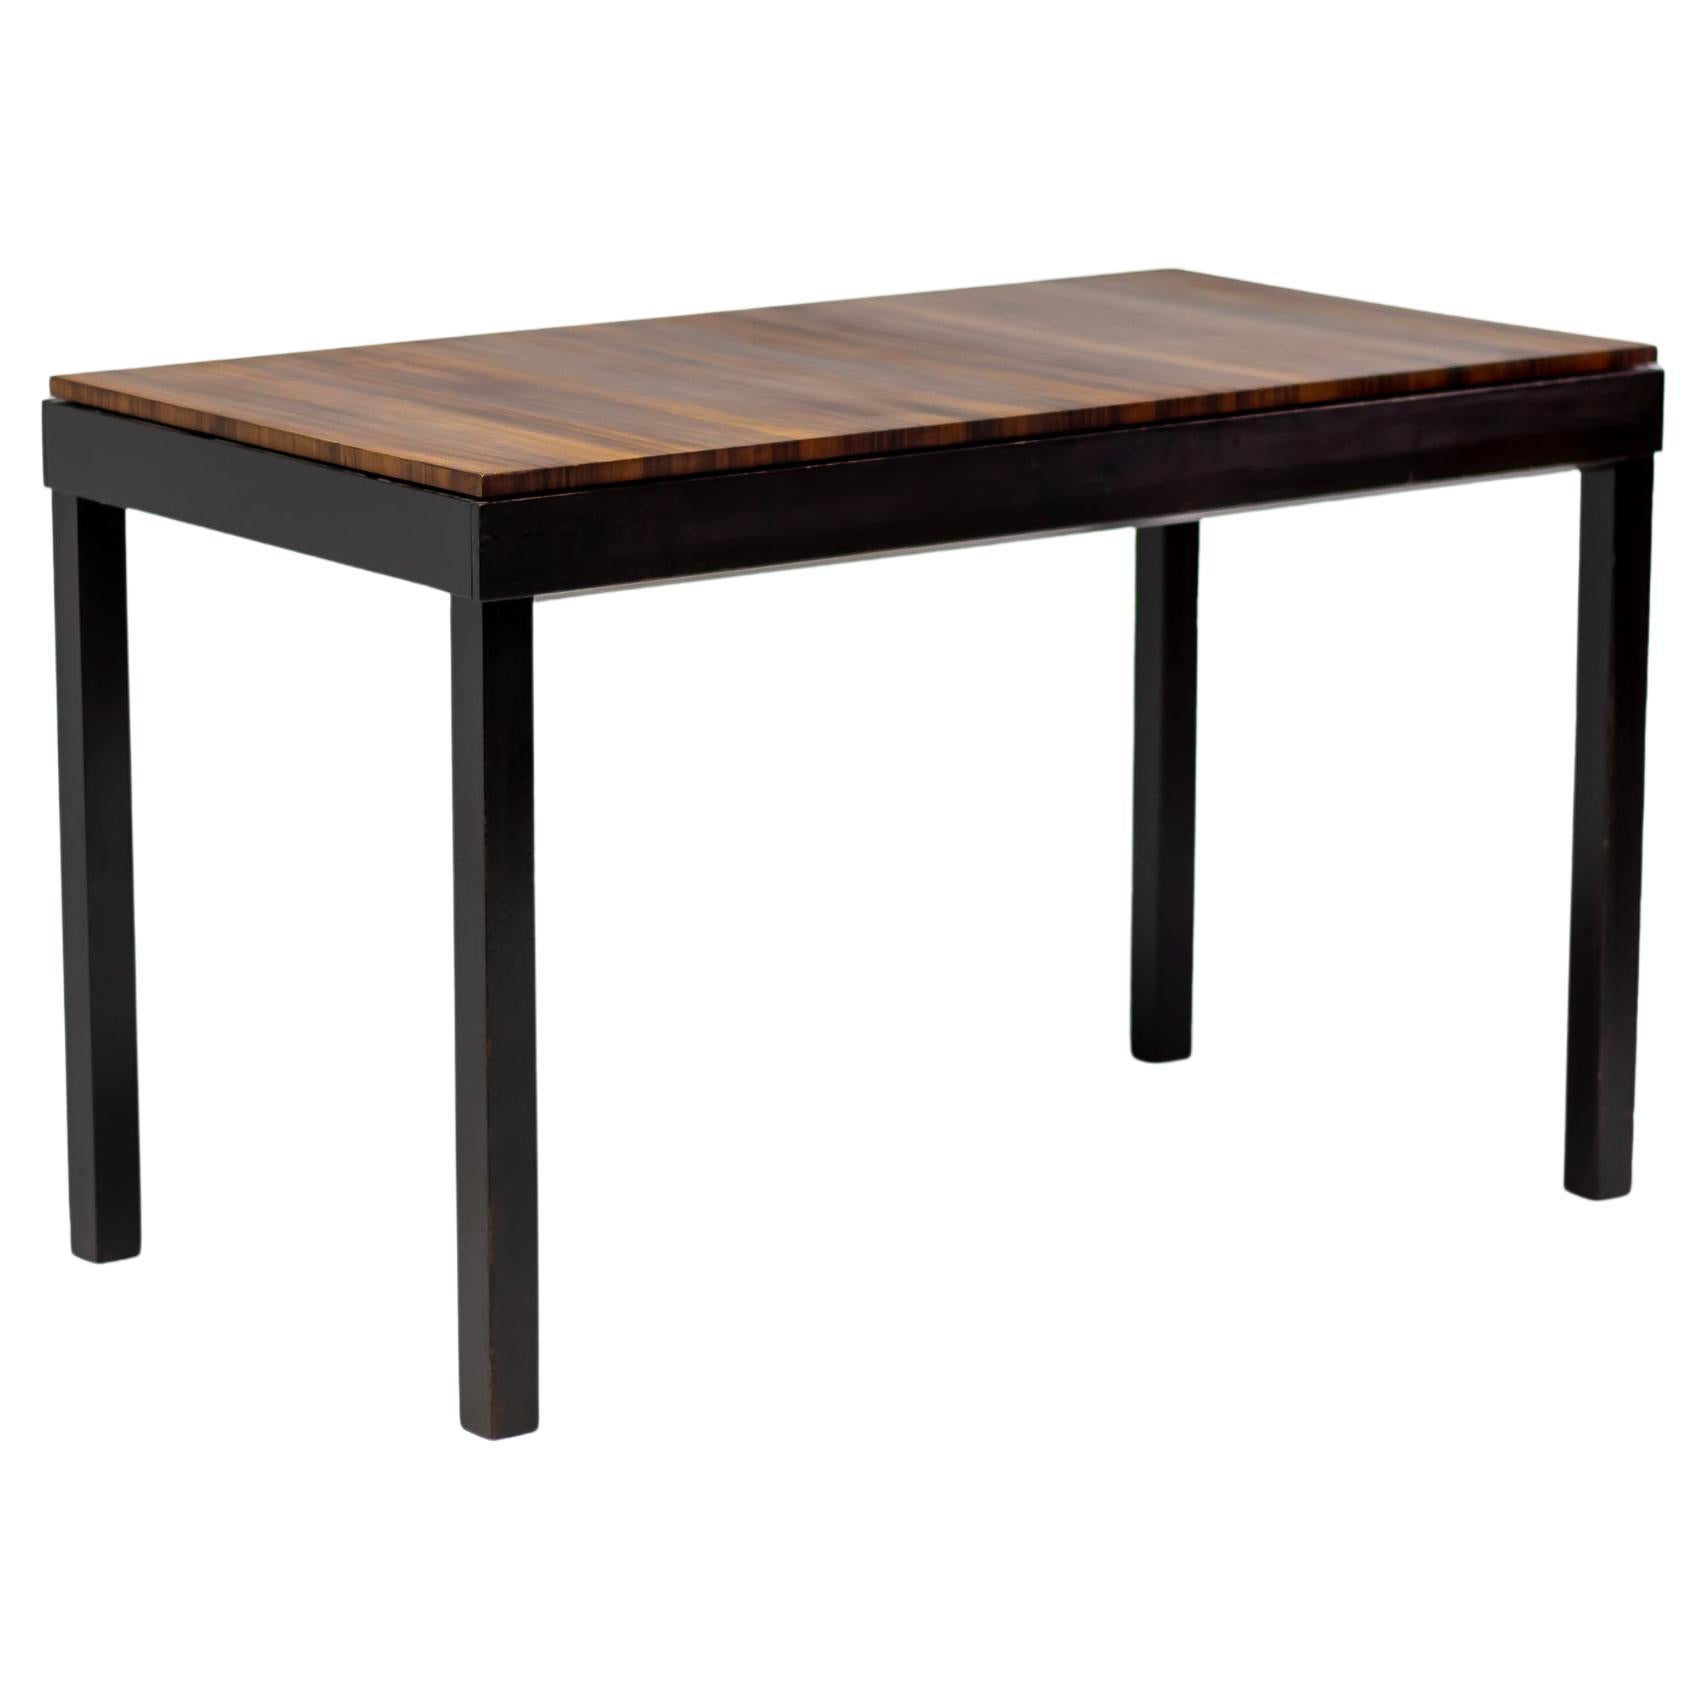 Axel Einar Hjorth Extendable Table, Macassar, 1930 For Sale